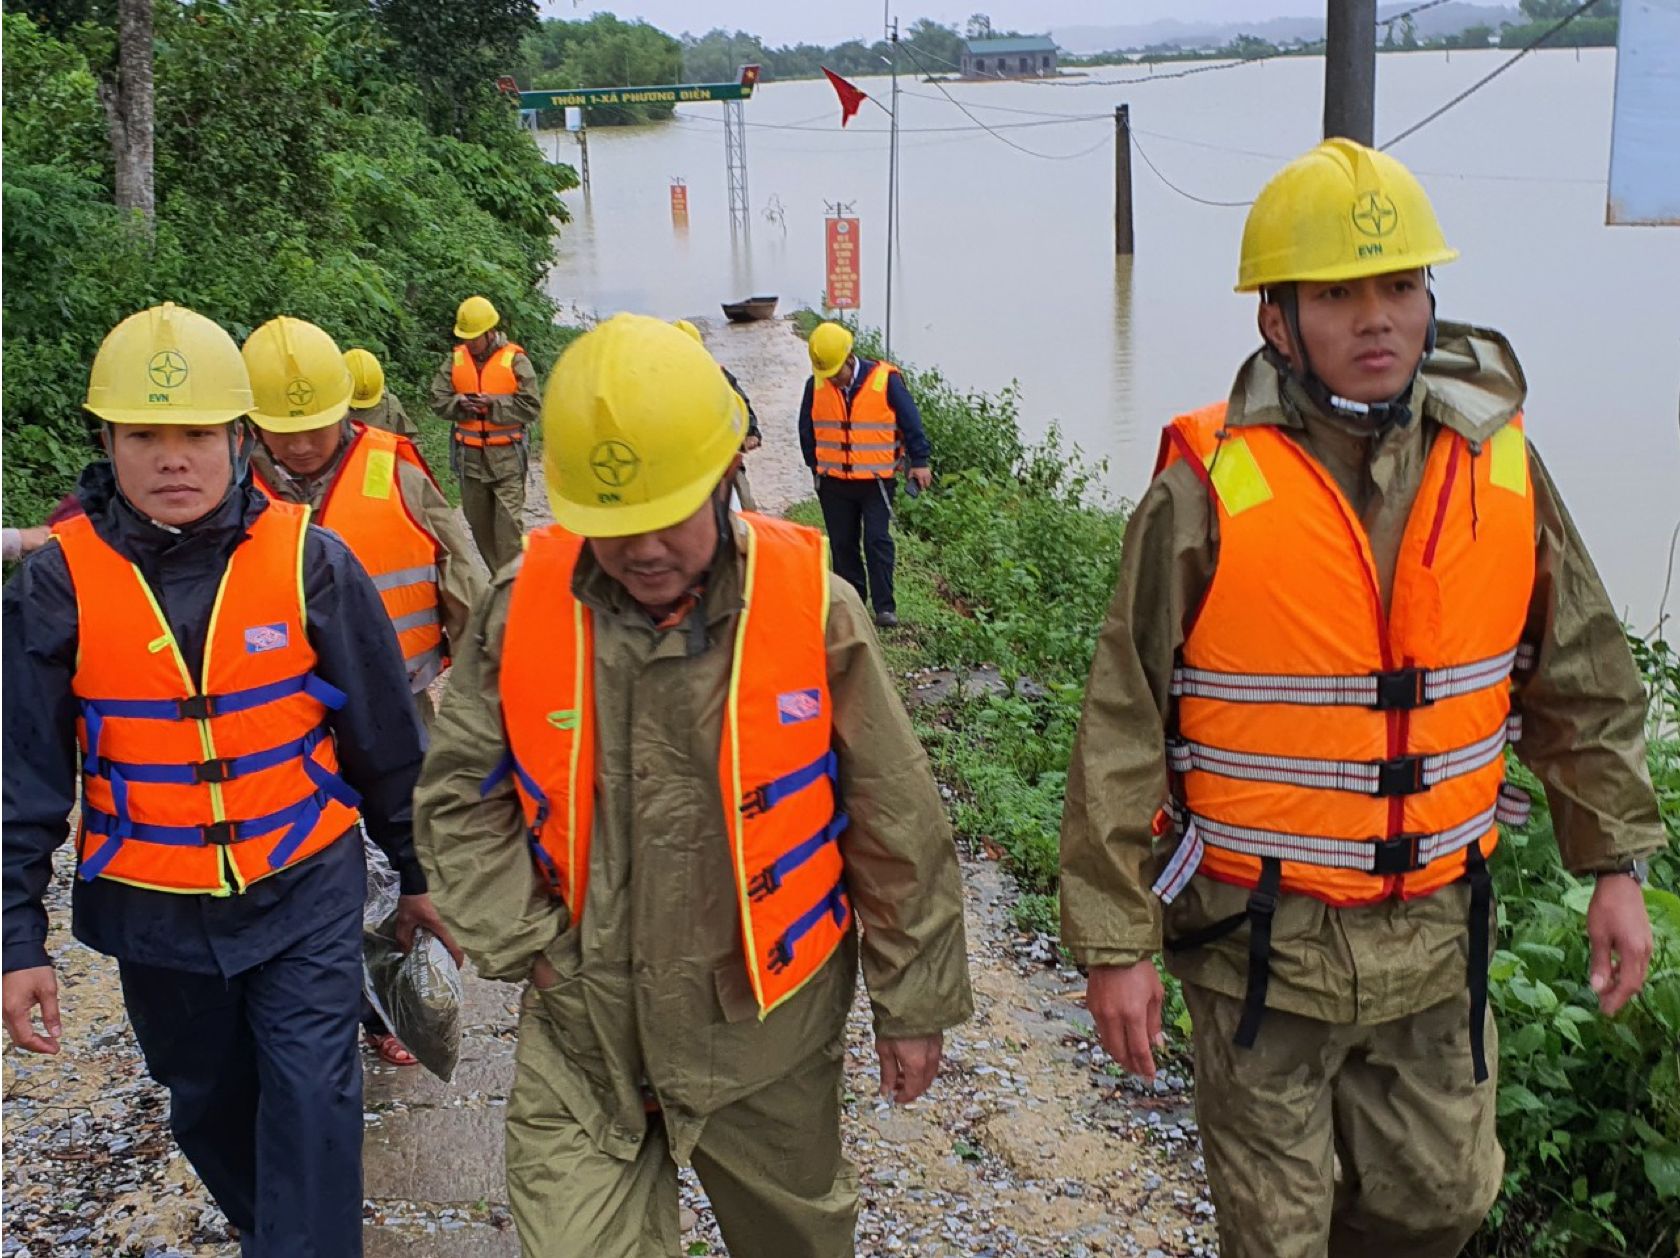 Cập nhật tình hình khôi phục cung cấp điện tại Hà Tĩnh